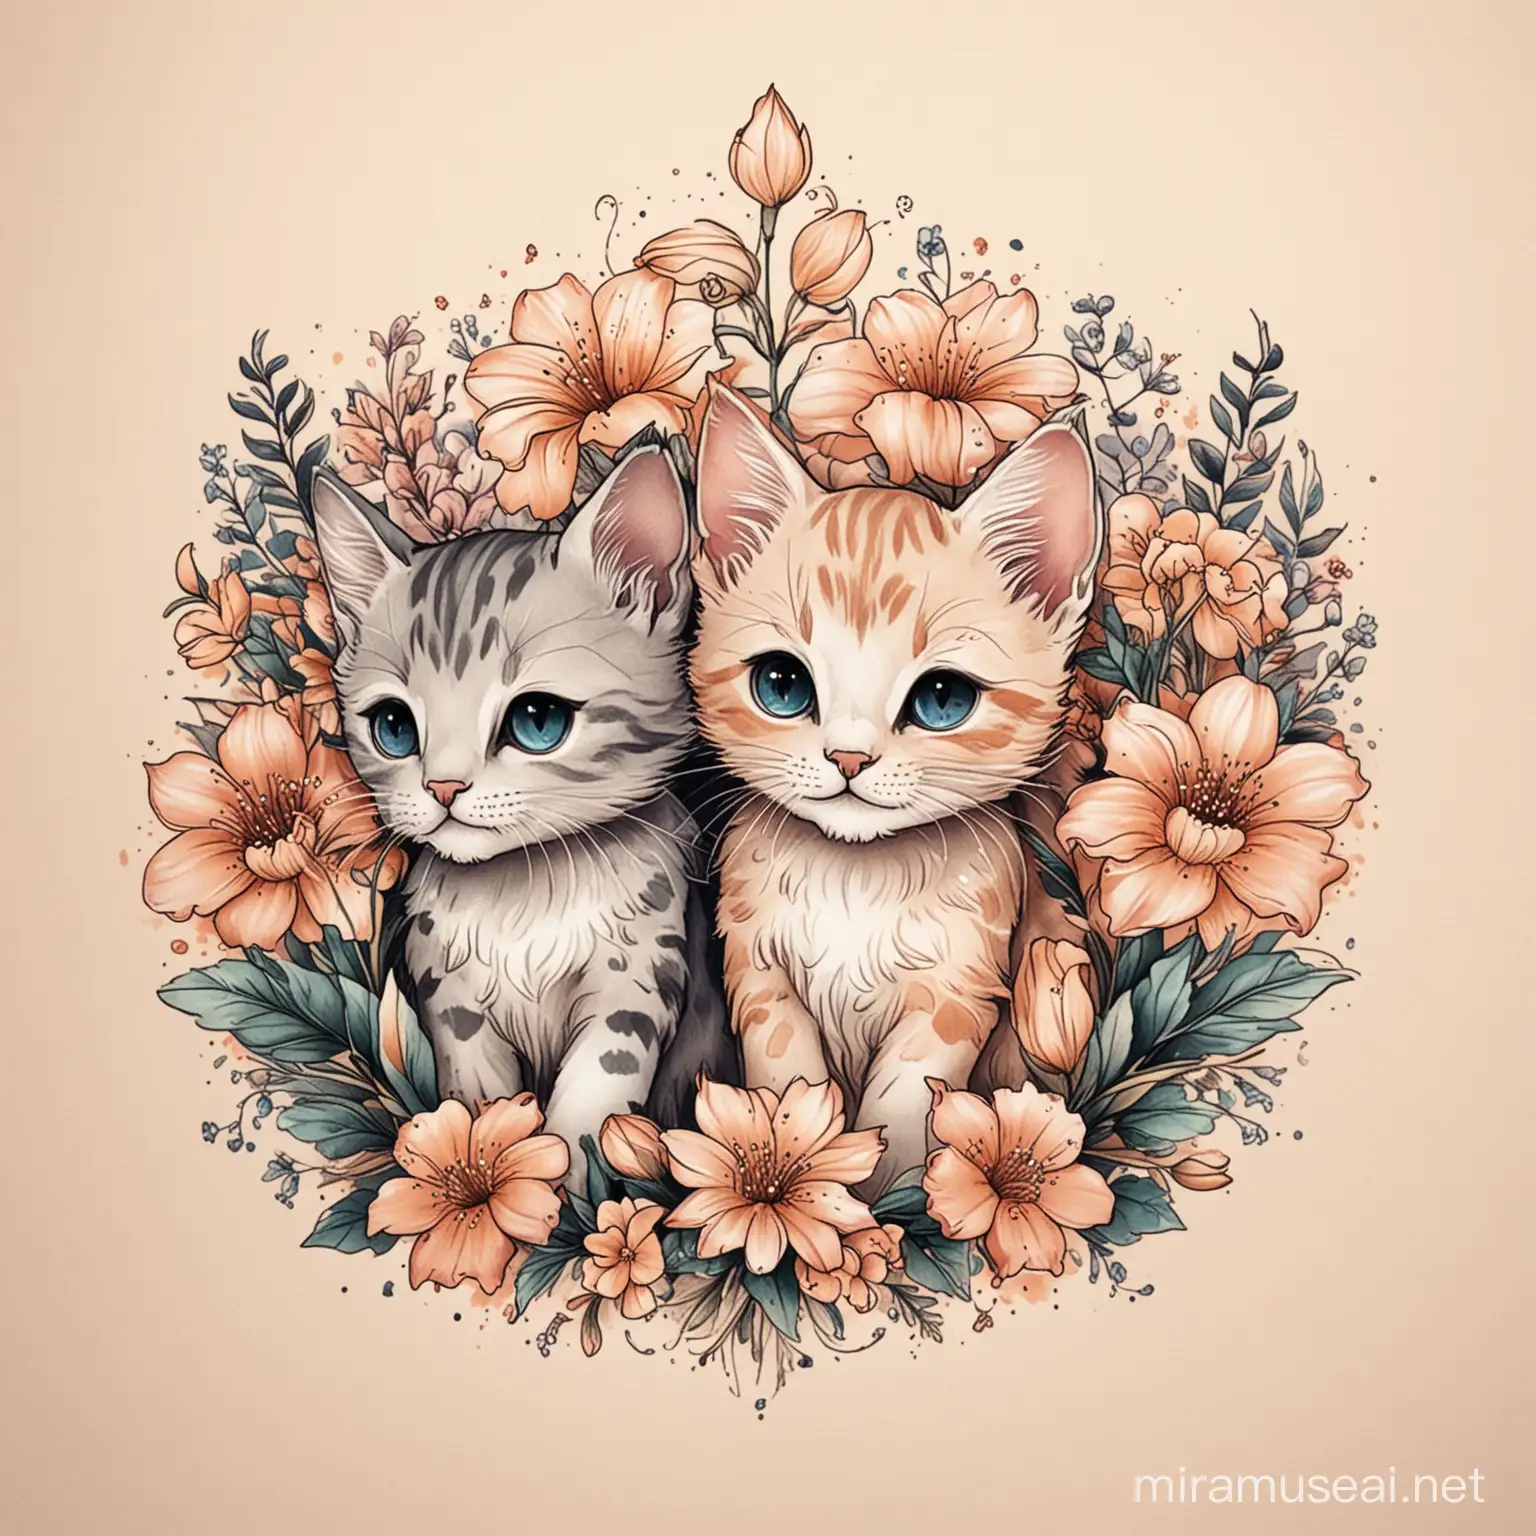 Para un diseño de tatuaje Crea una ilustración simple de dos gatitos jugando con flores y añade colores suaves.